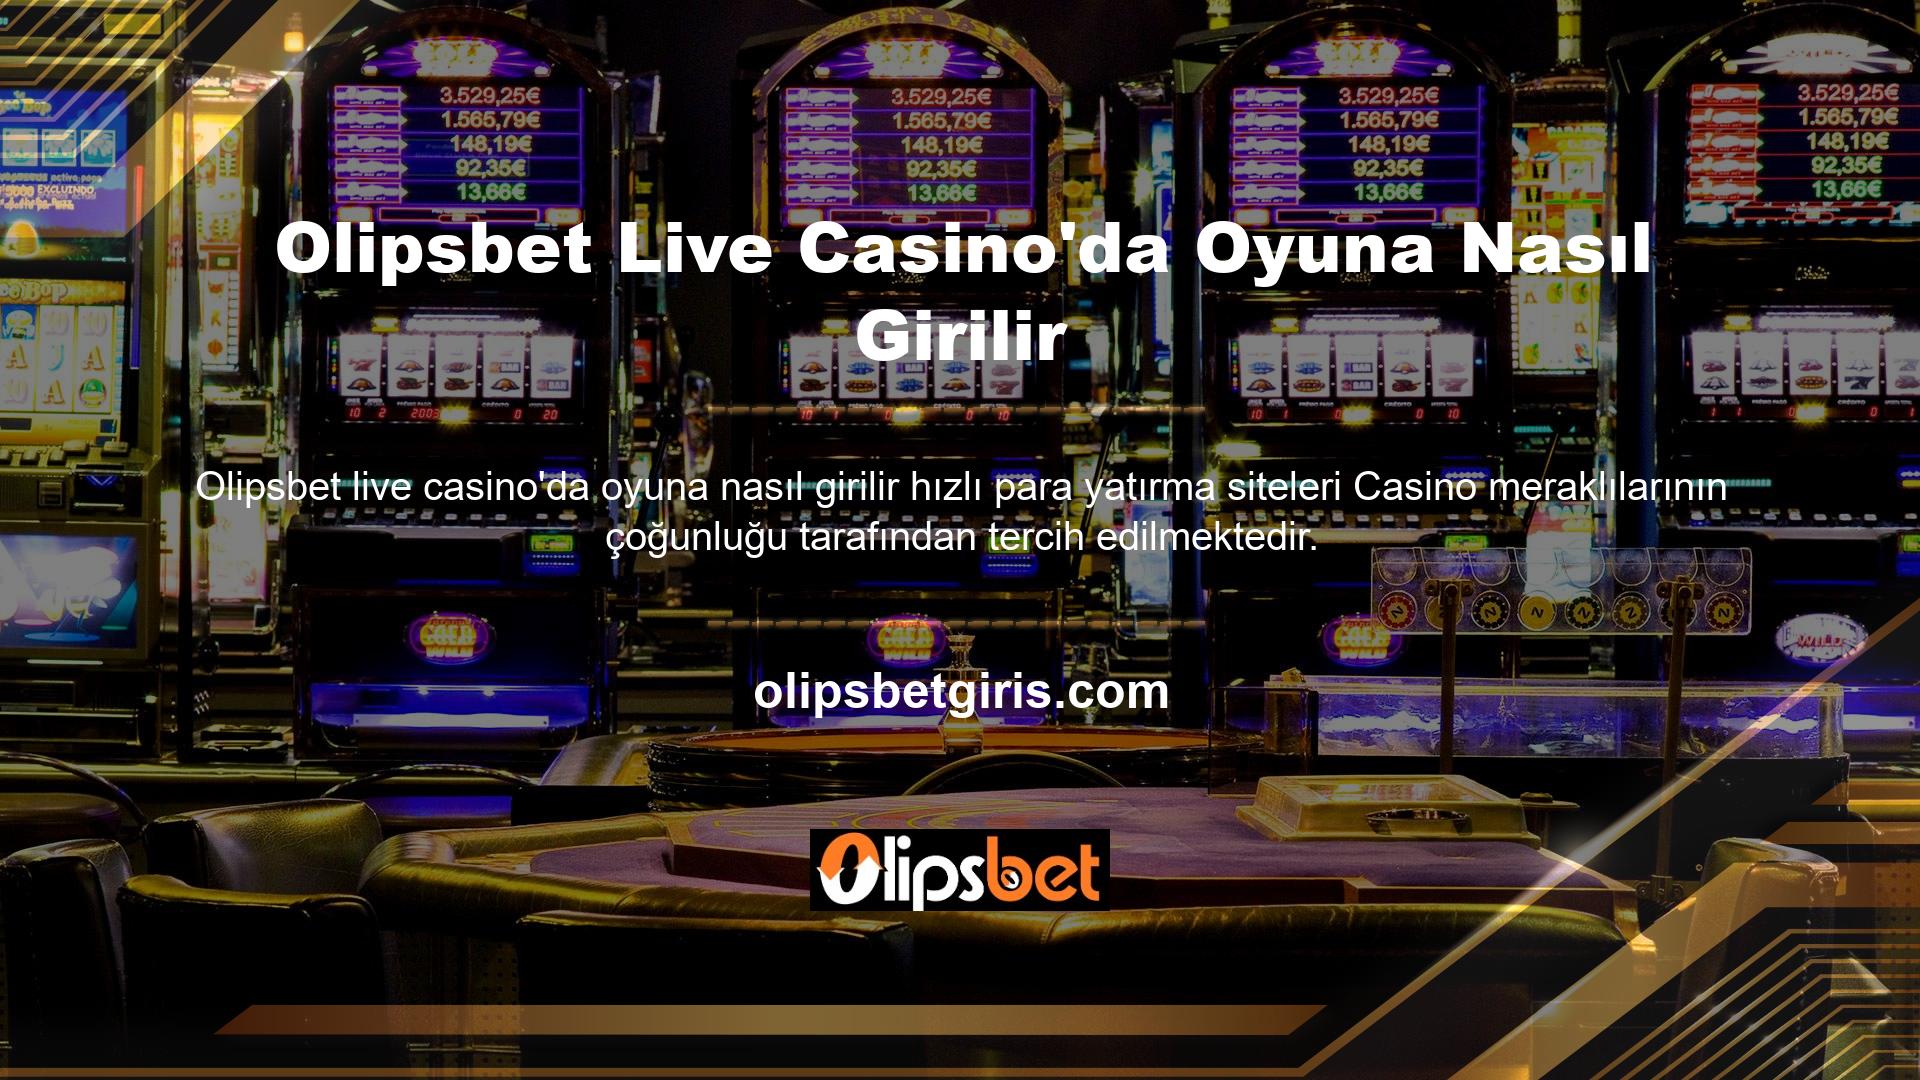 Olipsbet Canlı Casino'da oynamanın adımları nelerdir? Para yatırmak isteyen her oyuncu, online kayıt olduktan sonra oyunu oynamaya başlayabilir